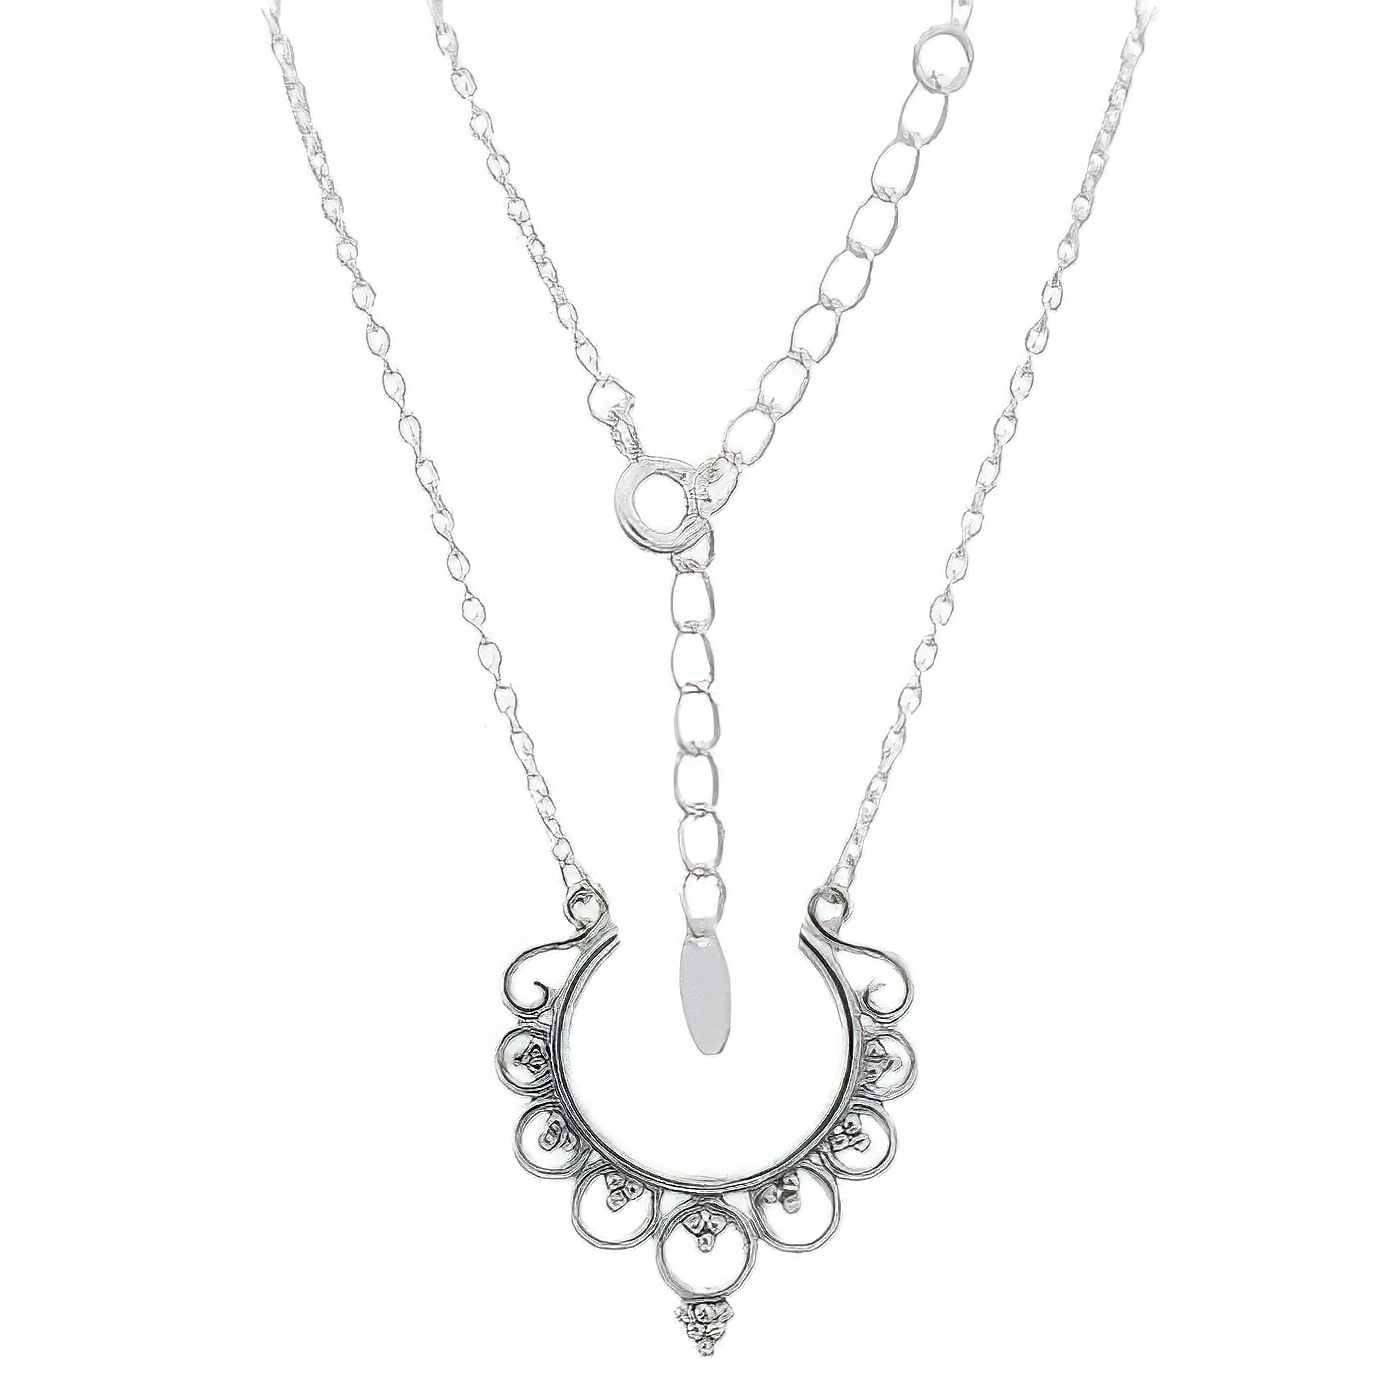 Stylish Bohemian Sterling Silver Necklace by BeYindi 